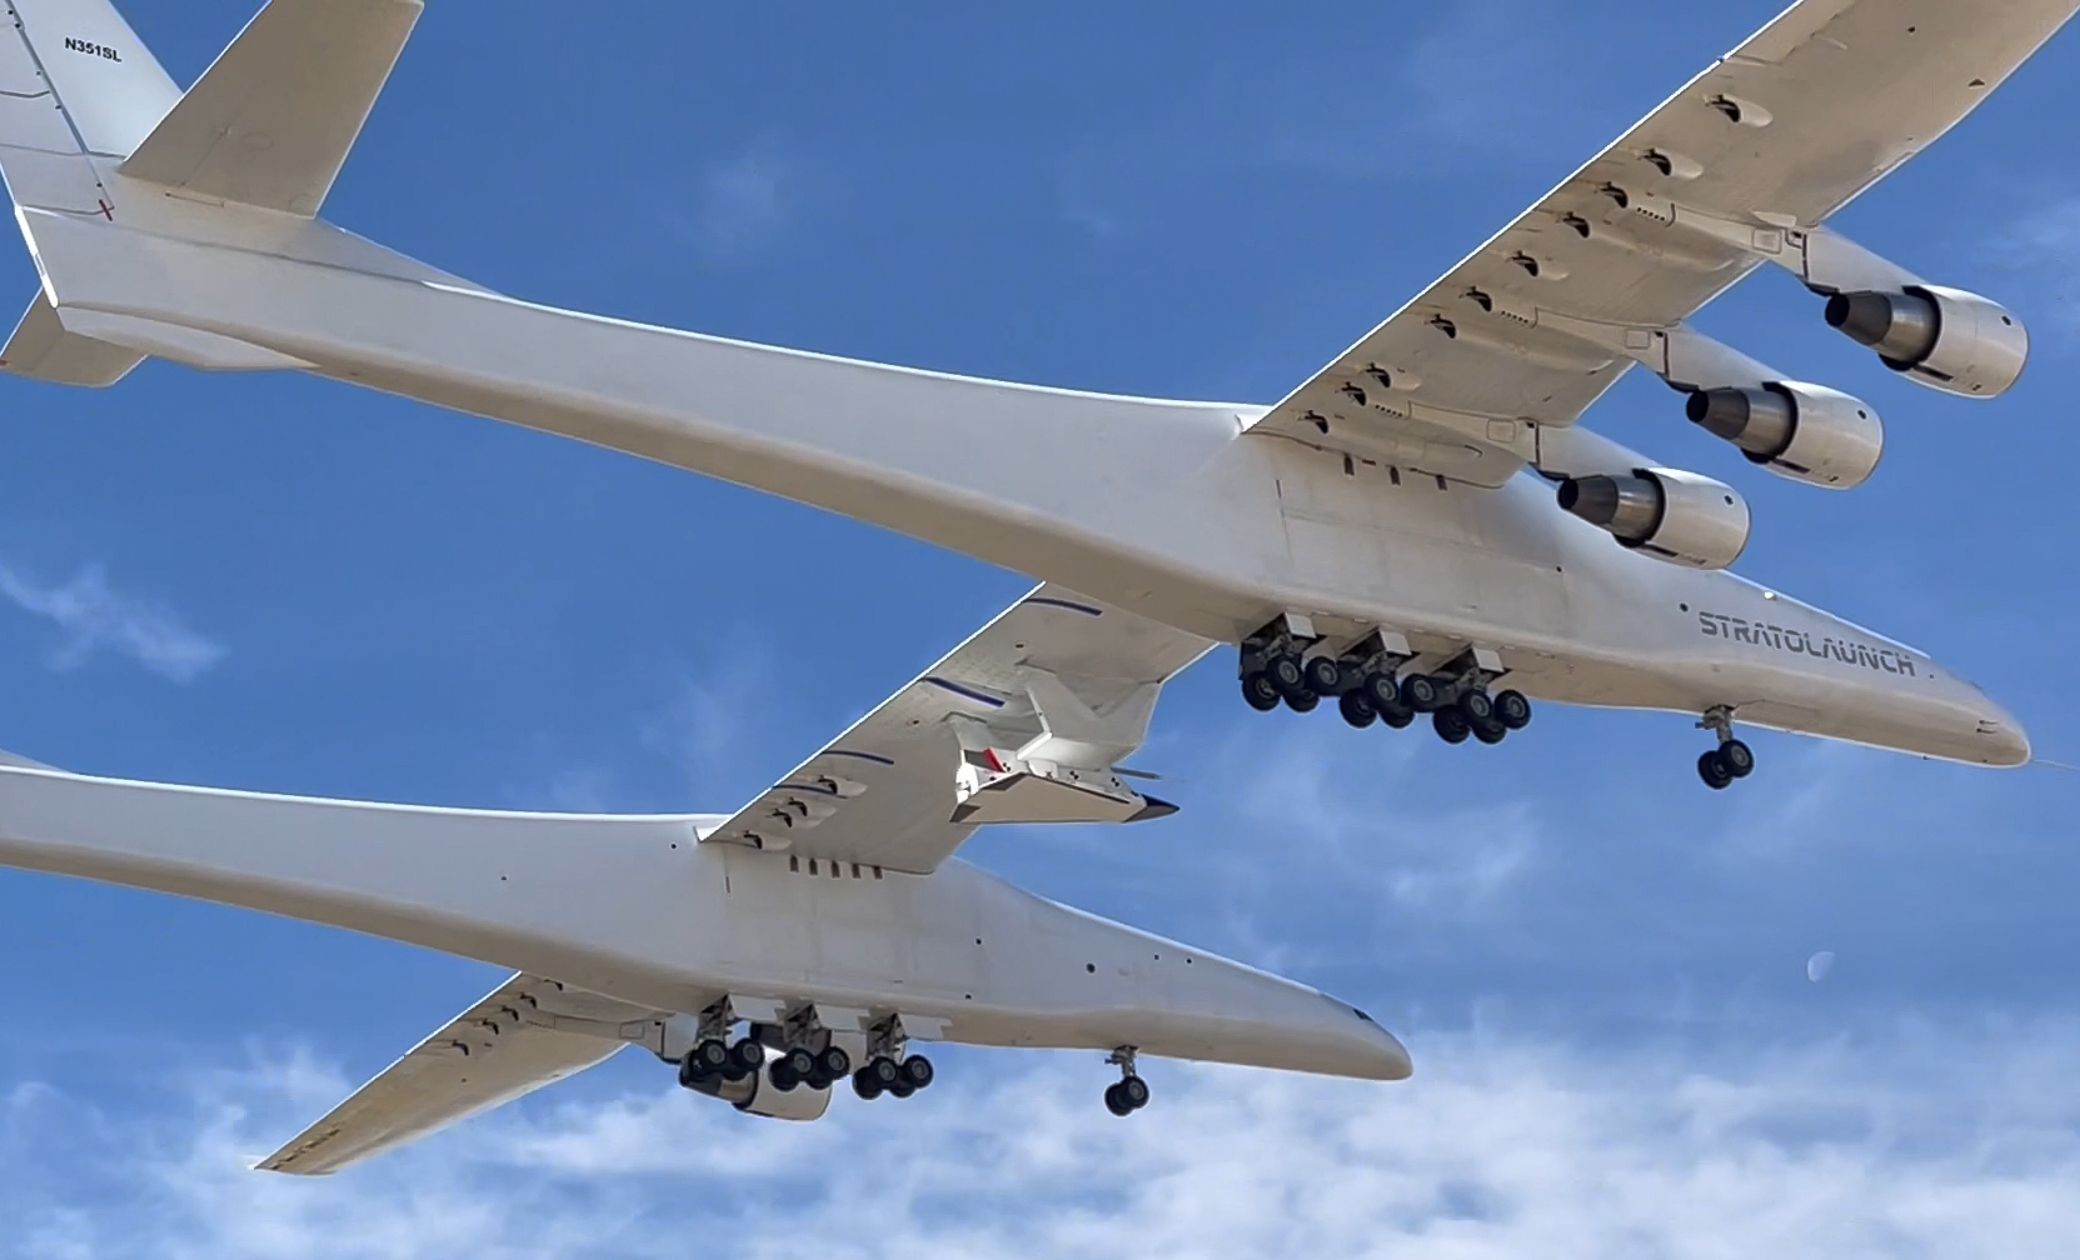 Verdens største Stratolaunch Roc-fly har foretaget sin jomfruflyvning med et Talon-A hypersonisk svævefly på brændstof.